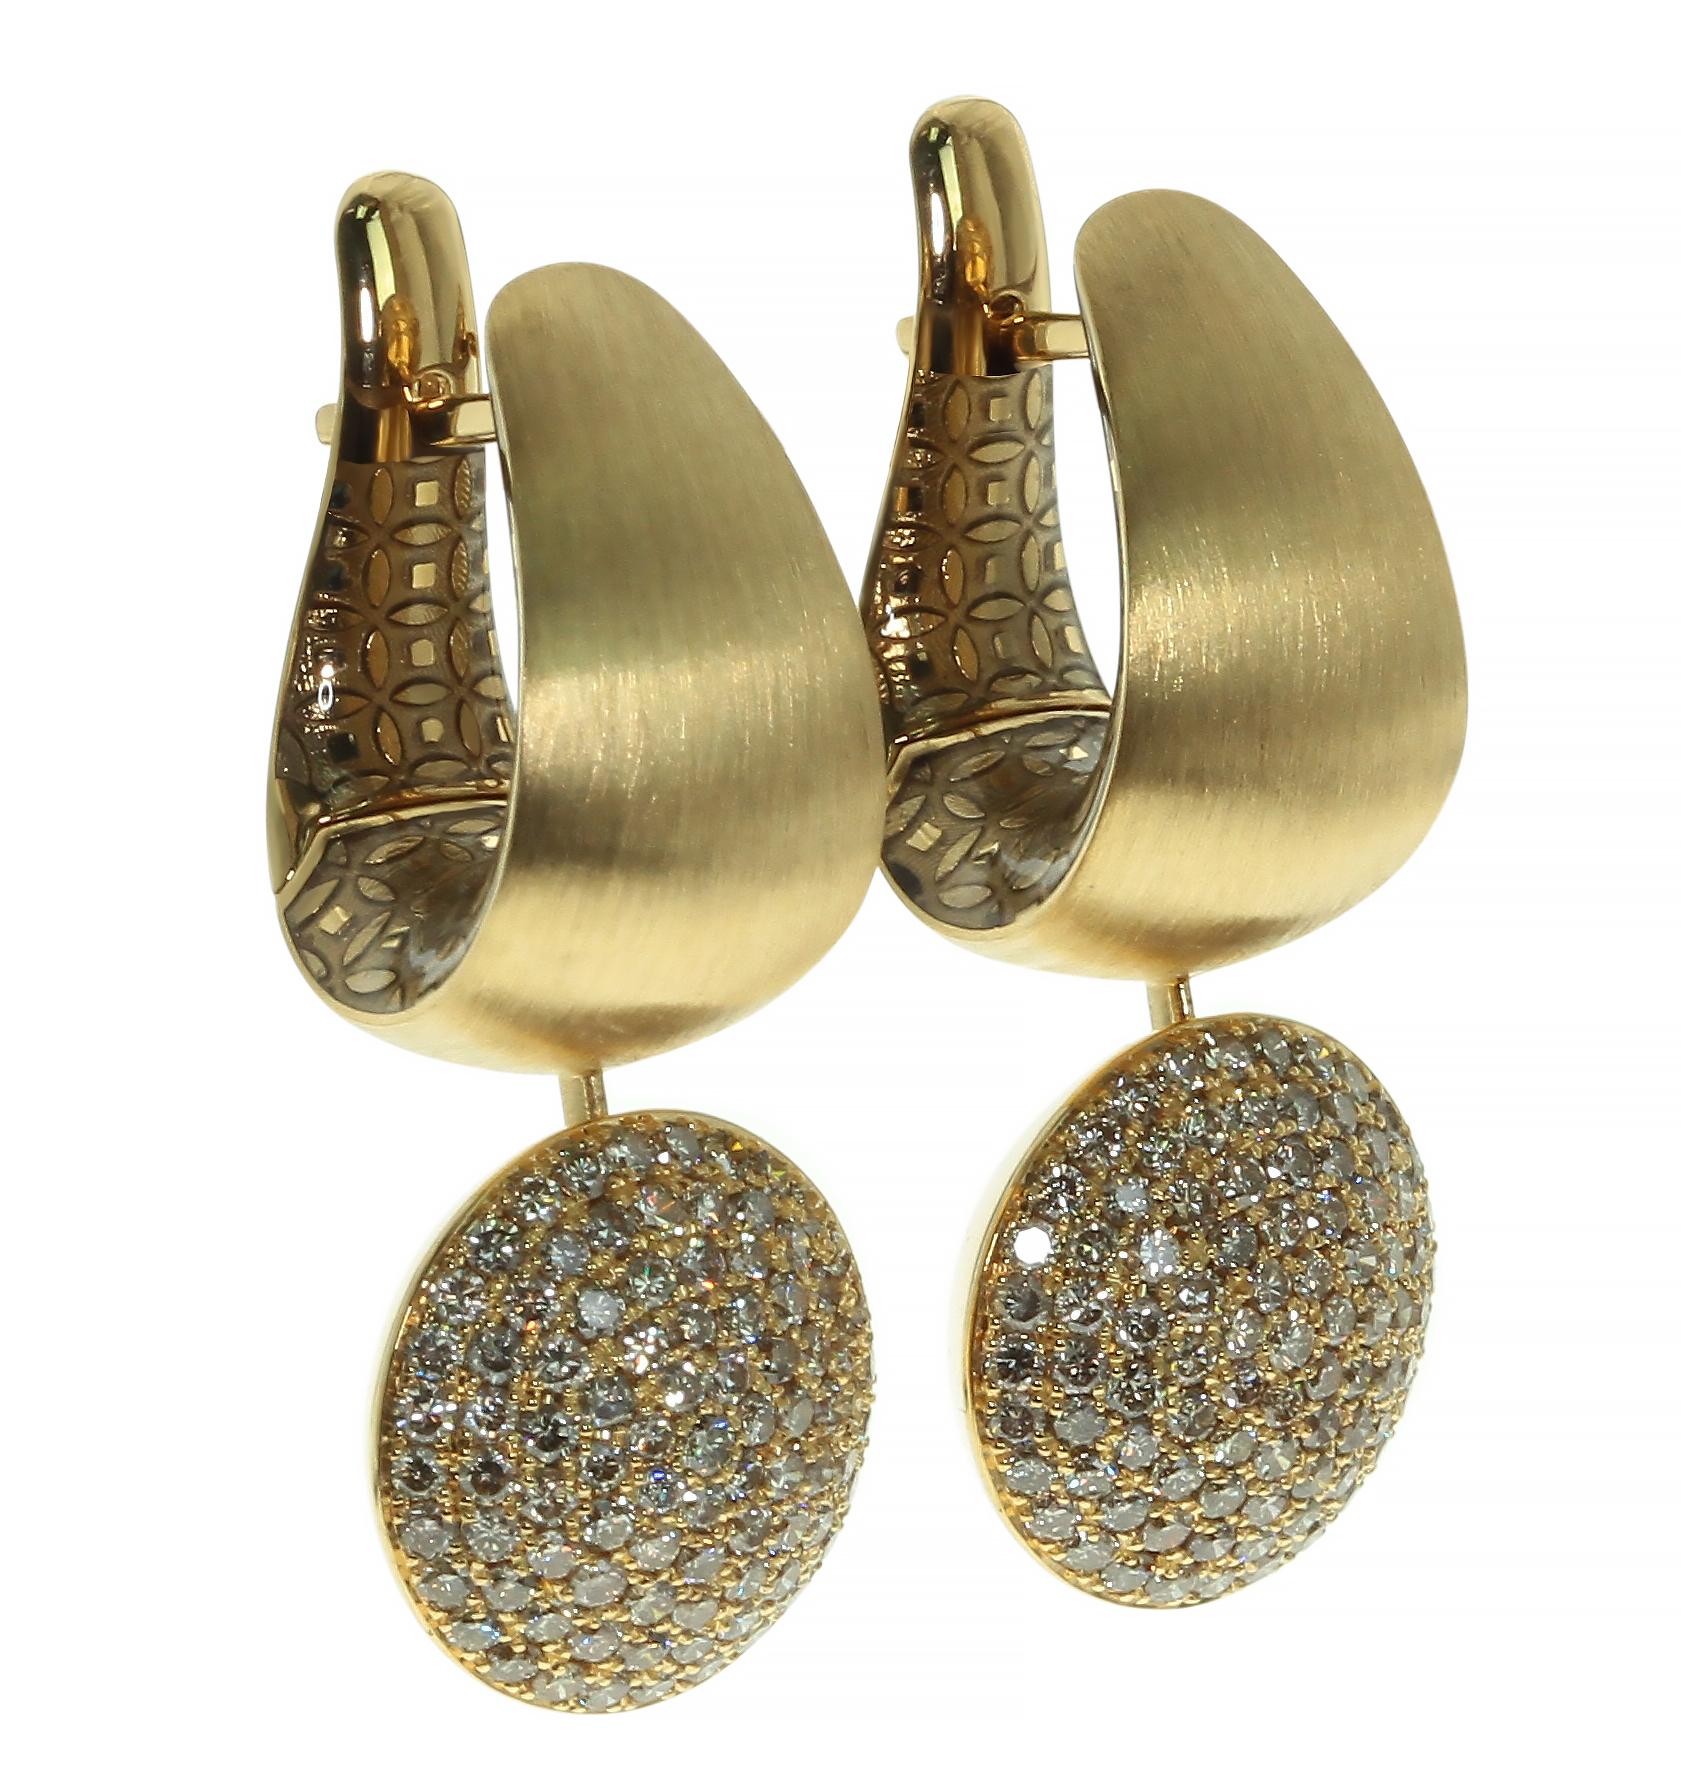 Diamanten Farbige Emaille 18 Karat Gelbgold Kaleidoskop-Ohrringe

Werfen Sie einen Blick auf eine unserer Markentexturen in der Kaleidoscope Collection - 